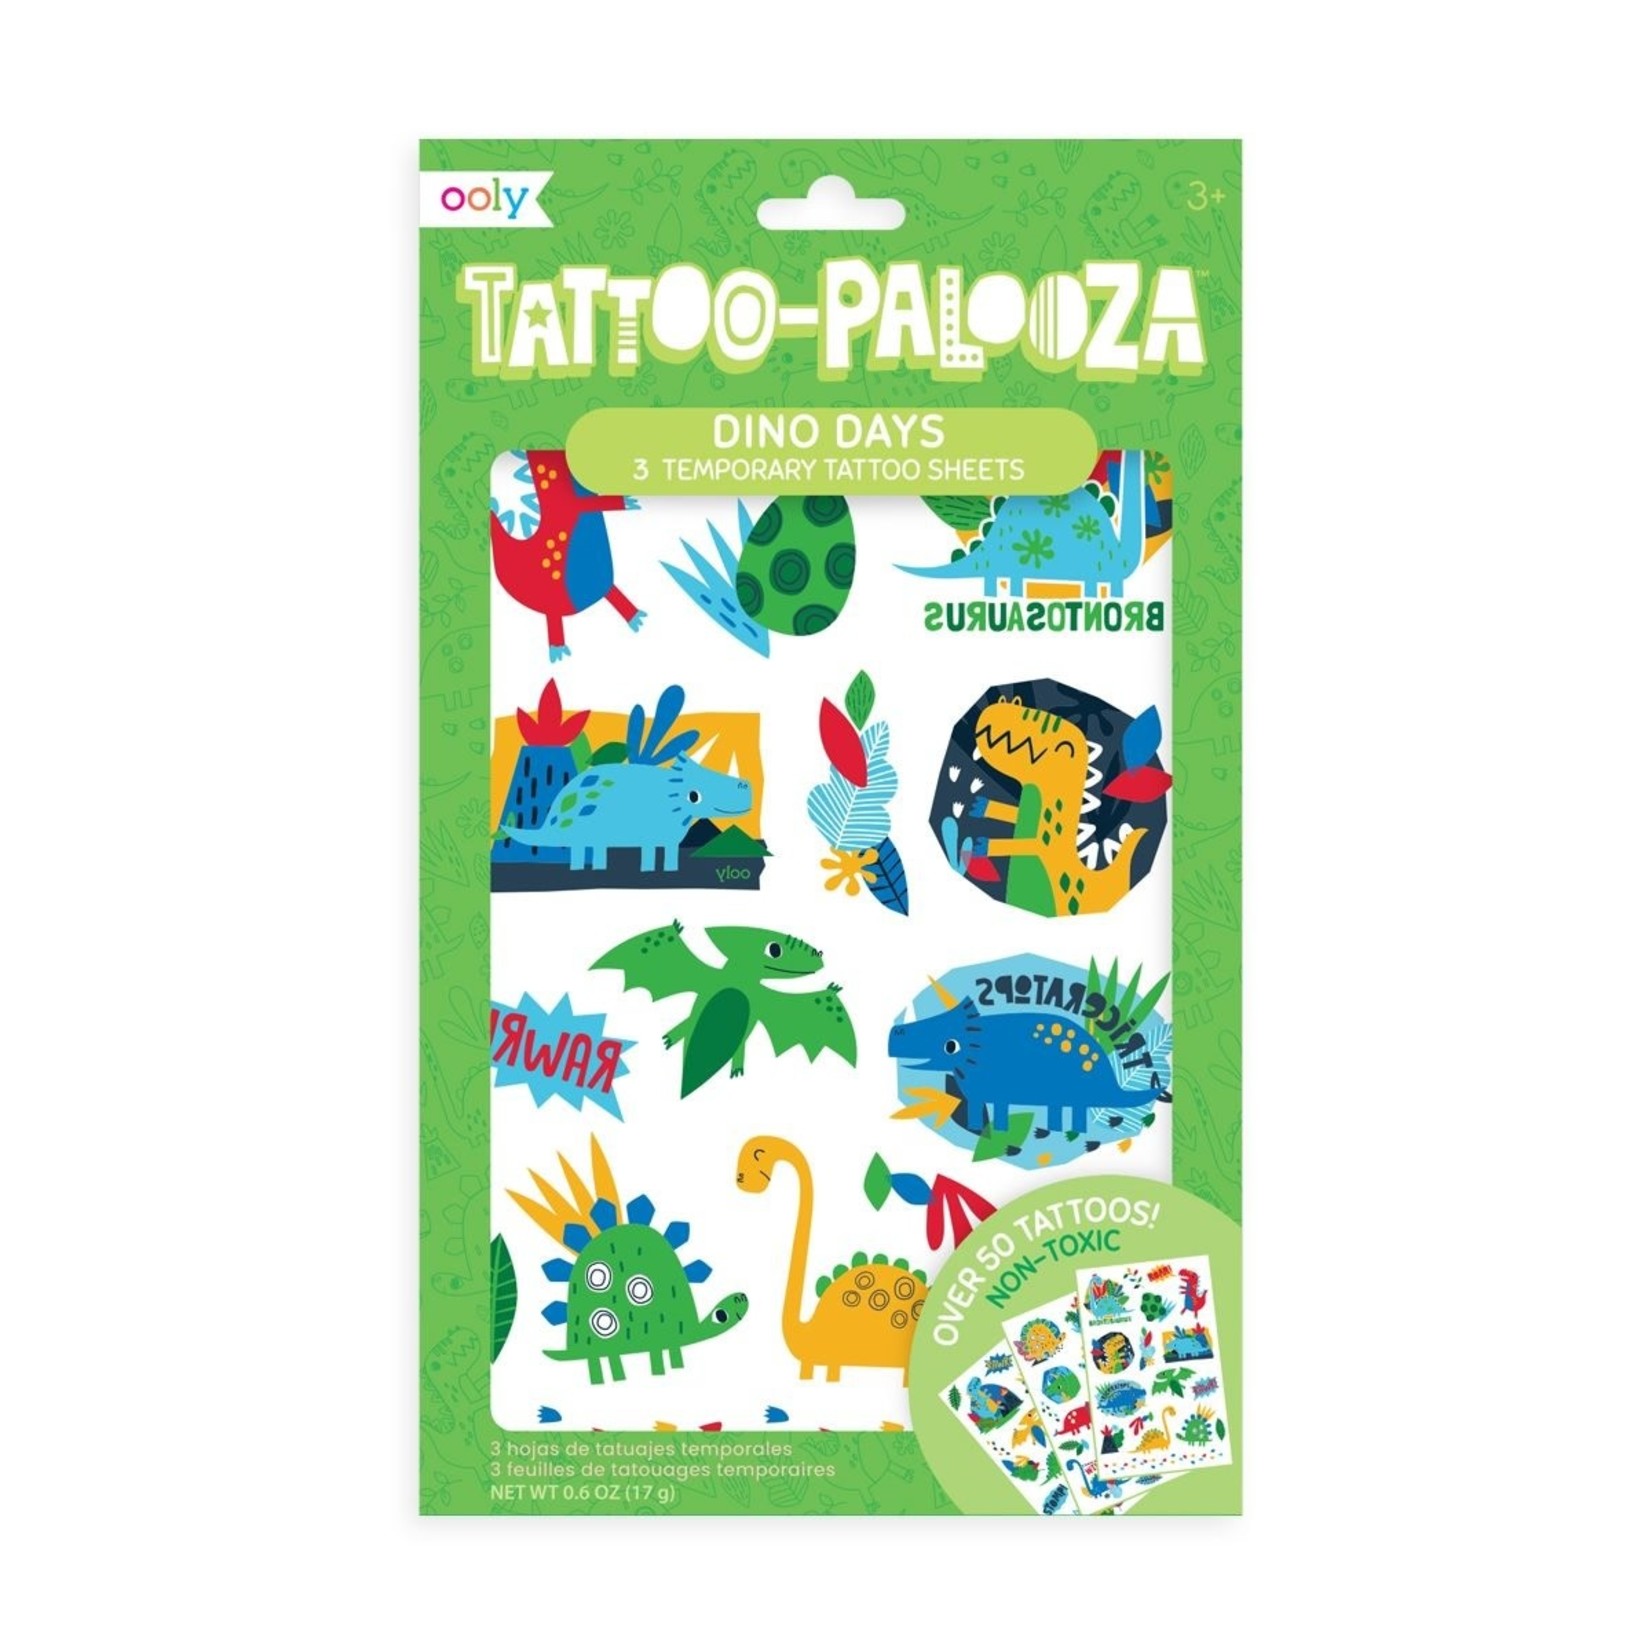 Ooly Tattoo Palooza Temporary Tattoo: Dino Days